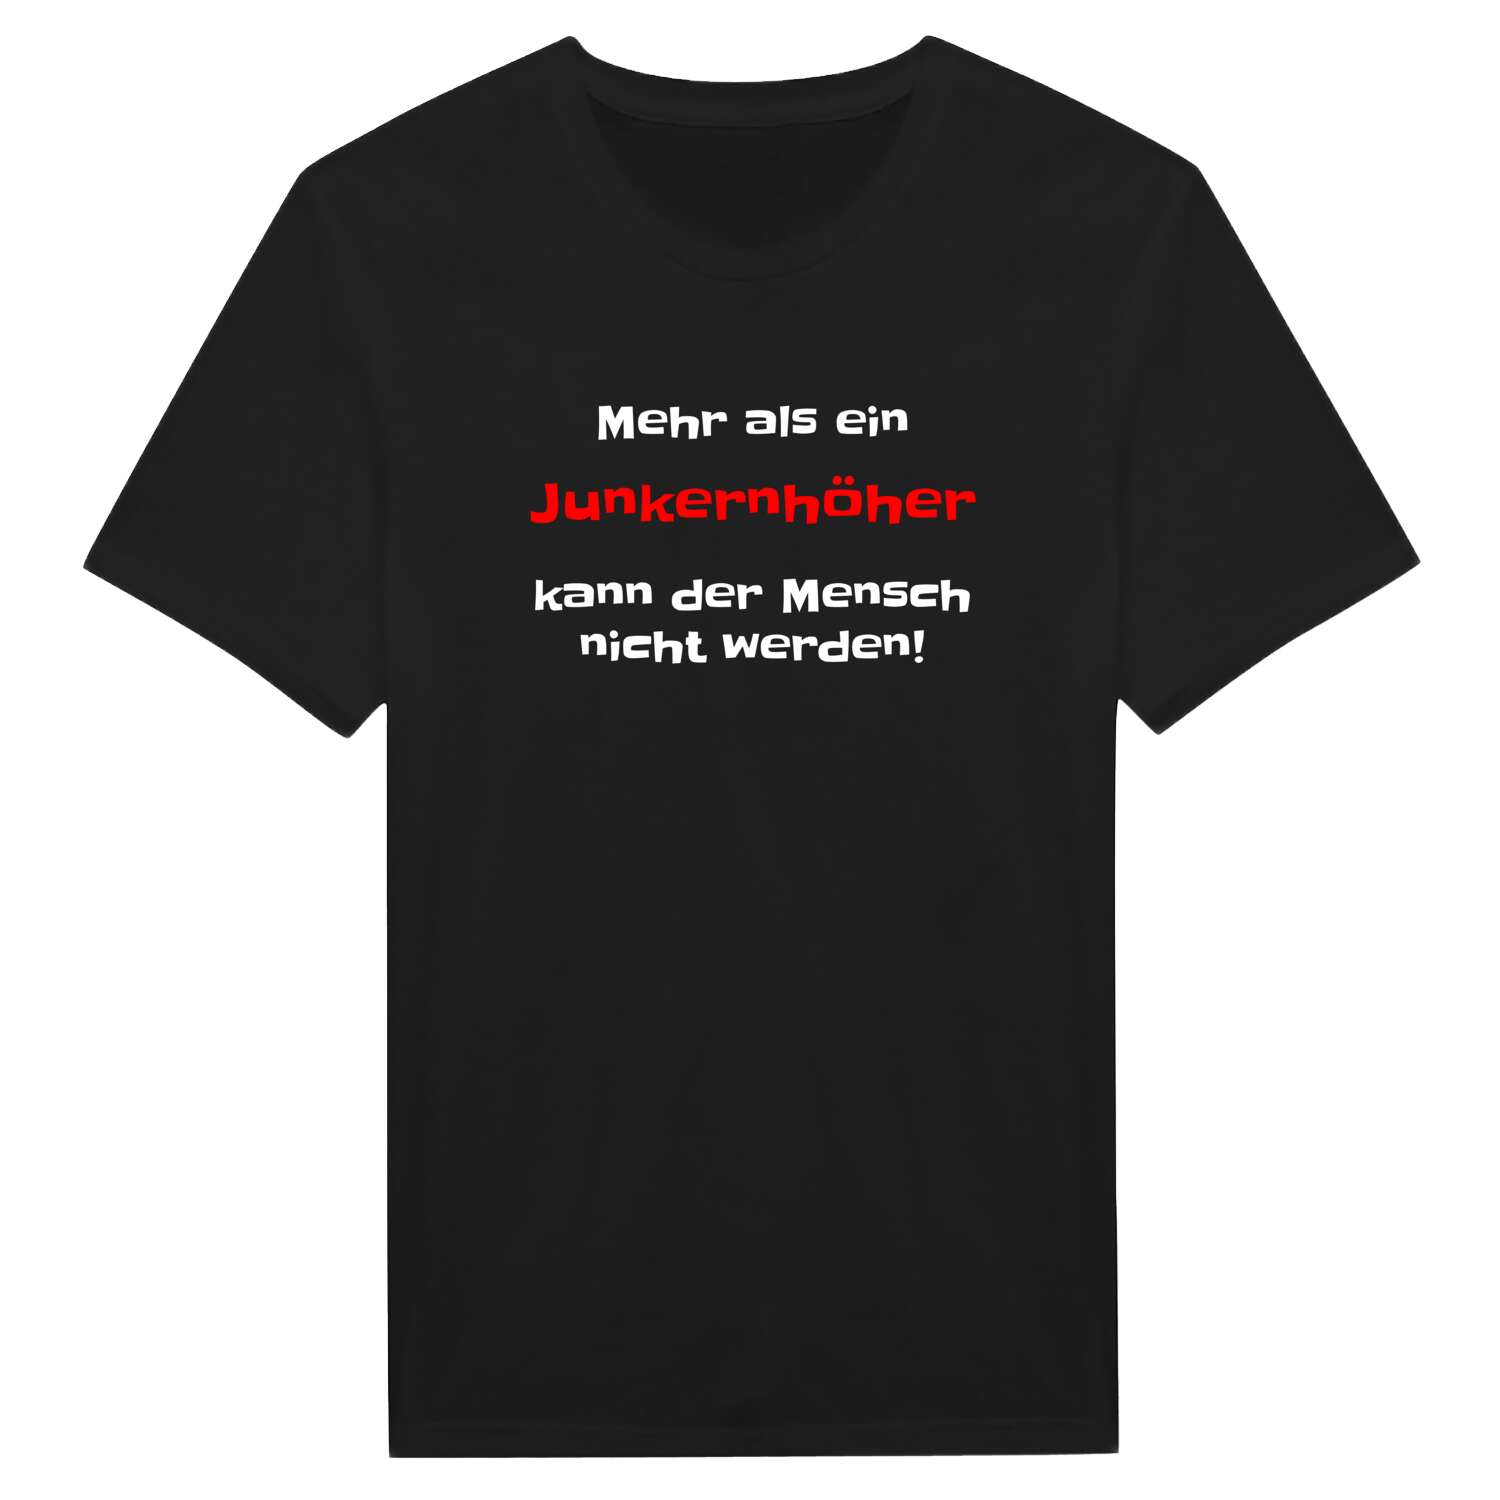 Junkernhöh T-Shirt »Mehr als ein«